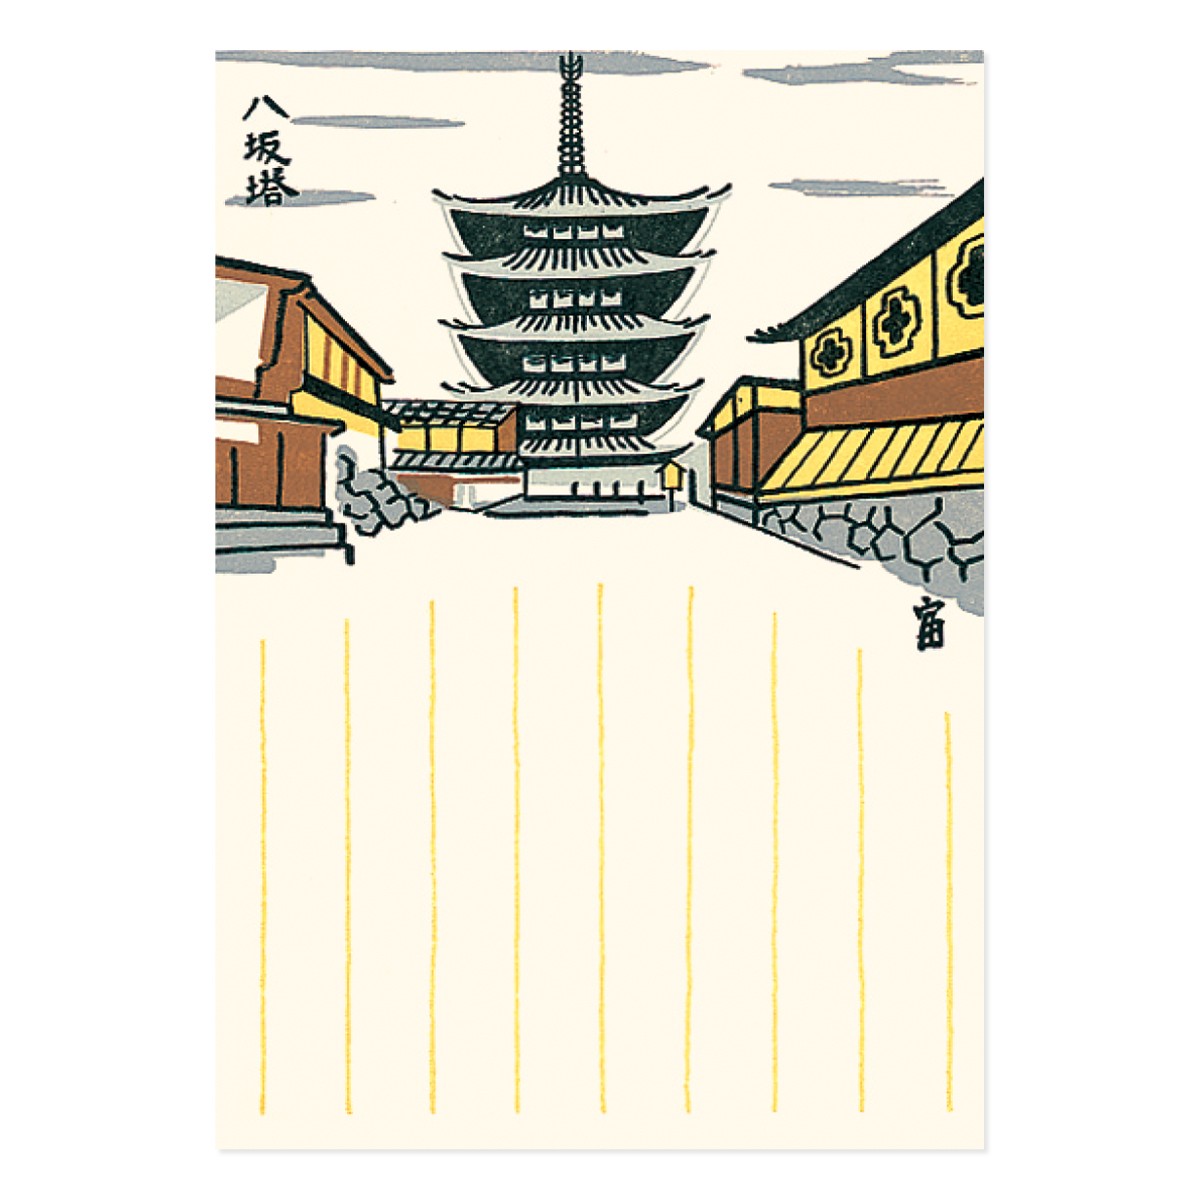 徳力富吉郎 版画 罫入り 京風景 絵はがき 八坂塔